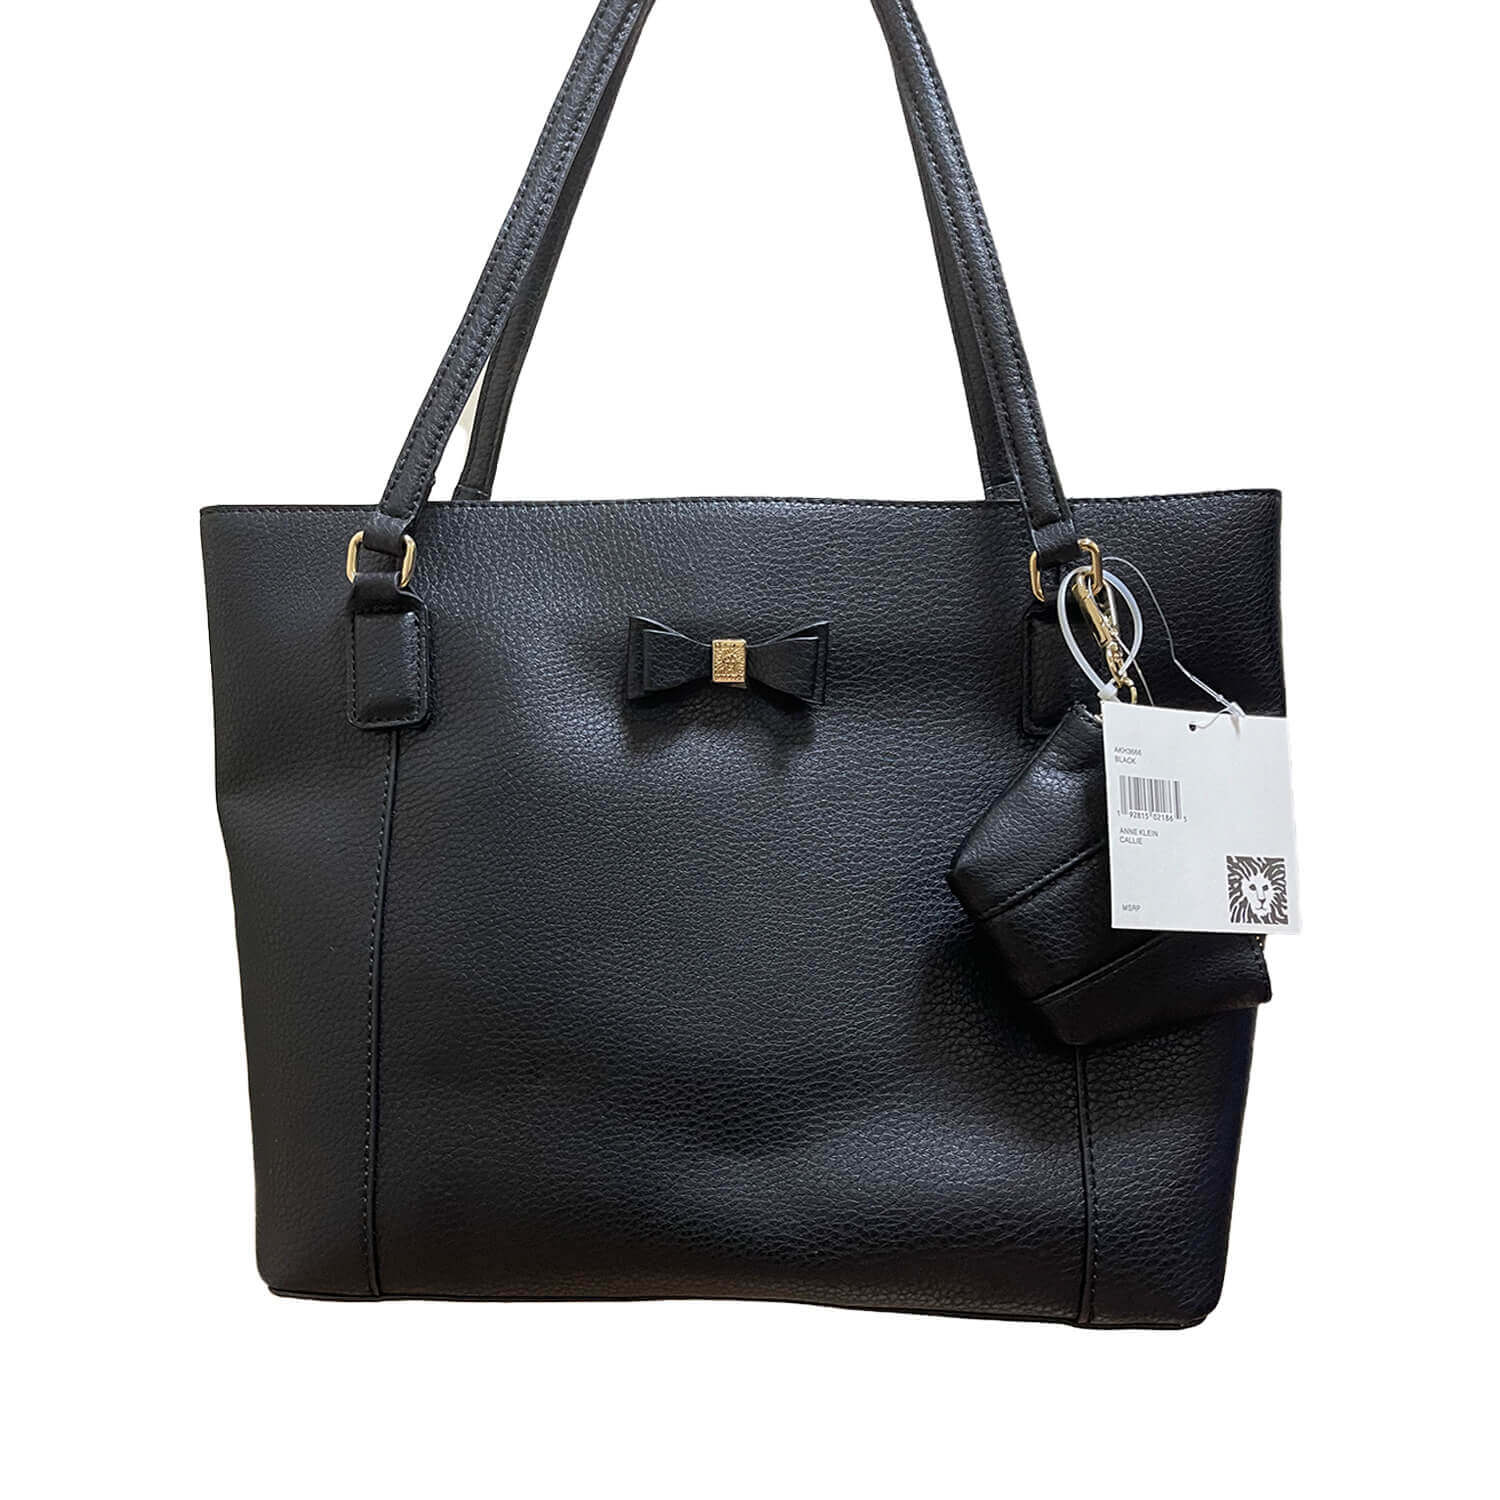 Anne Klein Return To Nature Large Yellow Satchel Handbag MSRP $109 |  Affordable Designer Brands